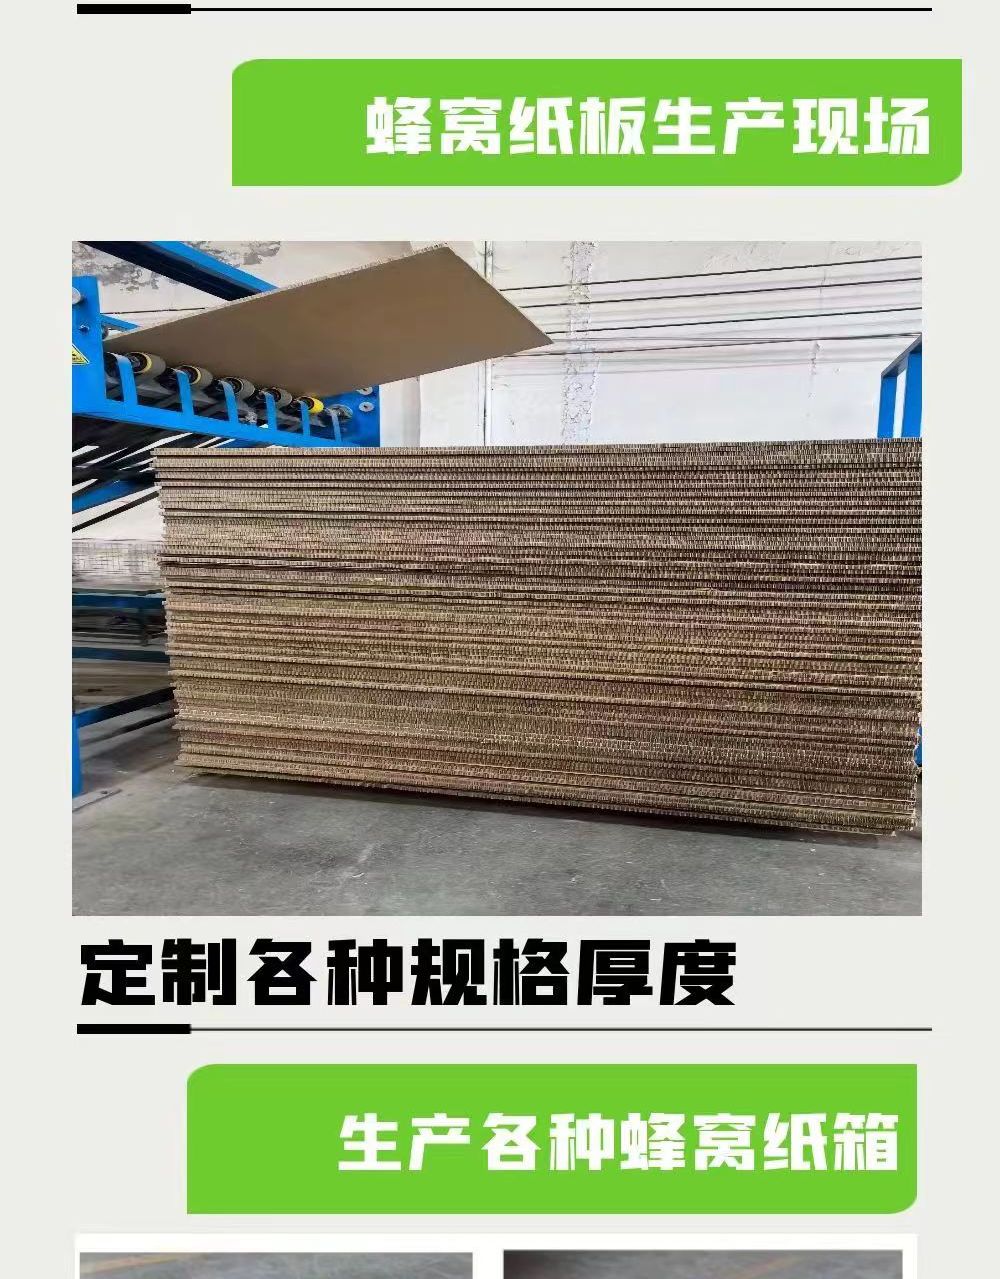 高强蜂窝纸板 机械设备包装 10/15/20/30厚 龙达纸制品